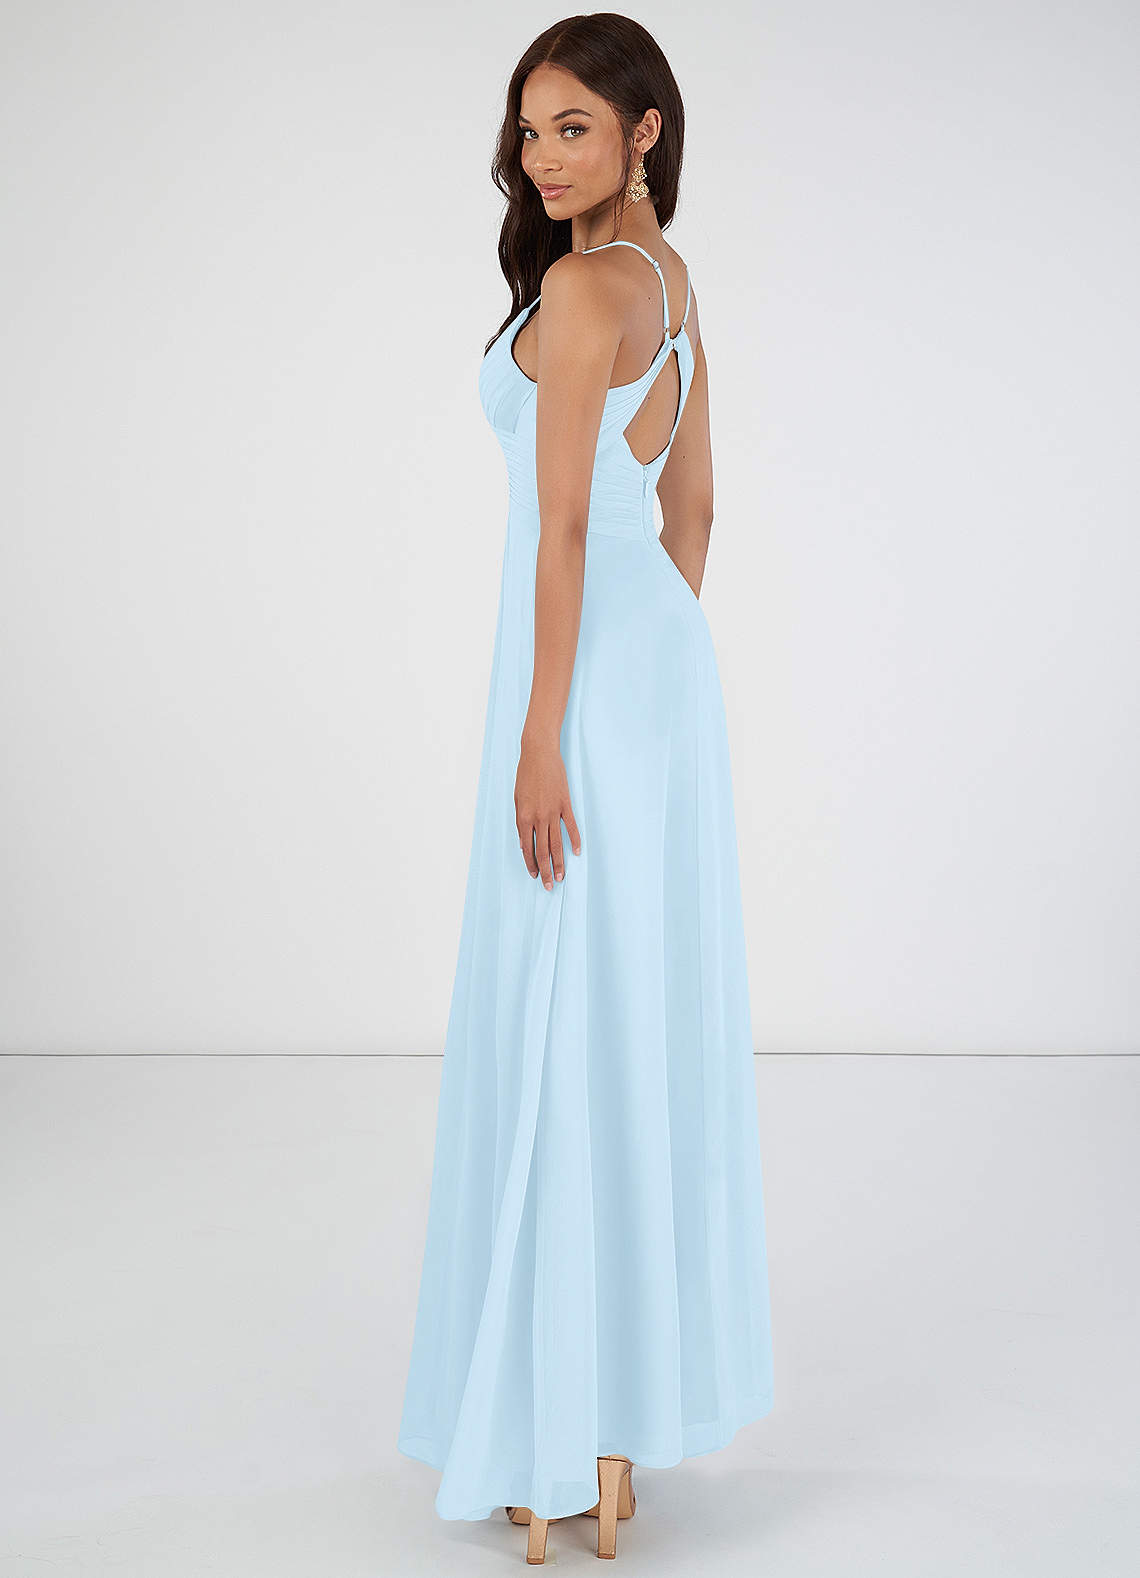 Azazie Haleigh Bridesmaid Dresses A-Line Pleated Chiffon Floor-Length Dress image1